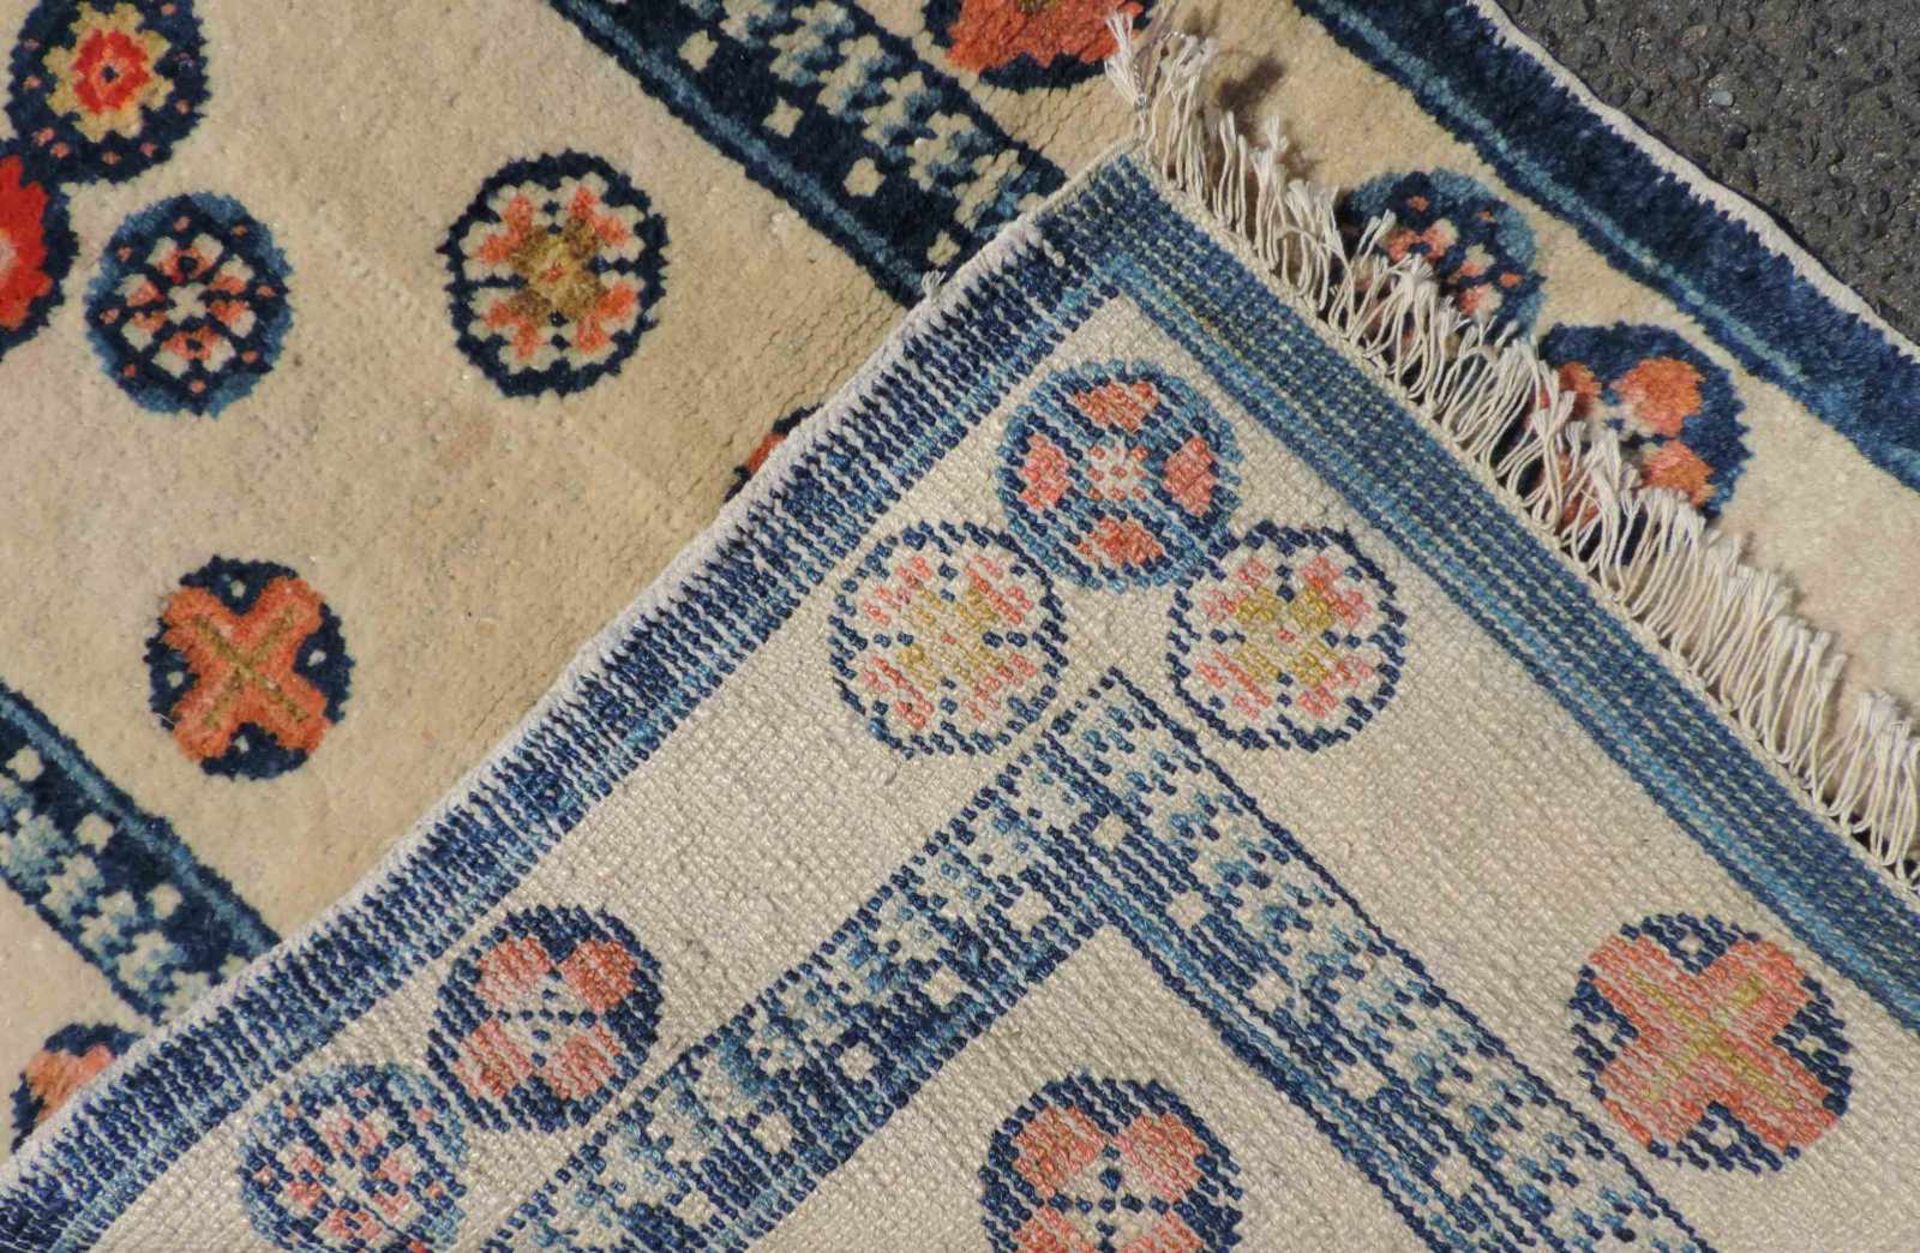 Pau Tou Meditationsteppich. China, antik, um 1900. 87 cm x 50 cm. Handgeknüpft, Wolle auf Baumwolle. - Bild 4 aus 4